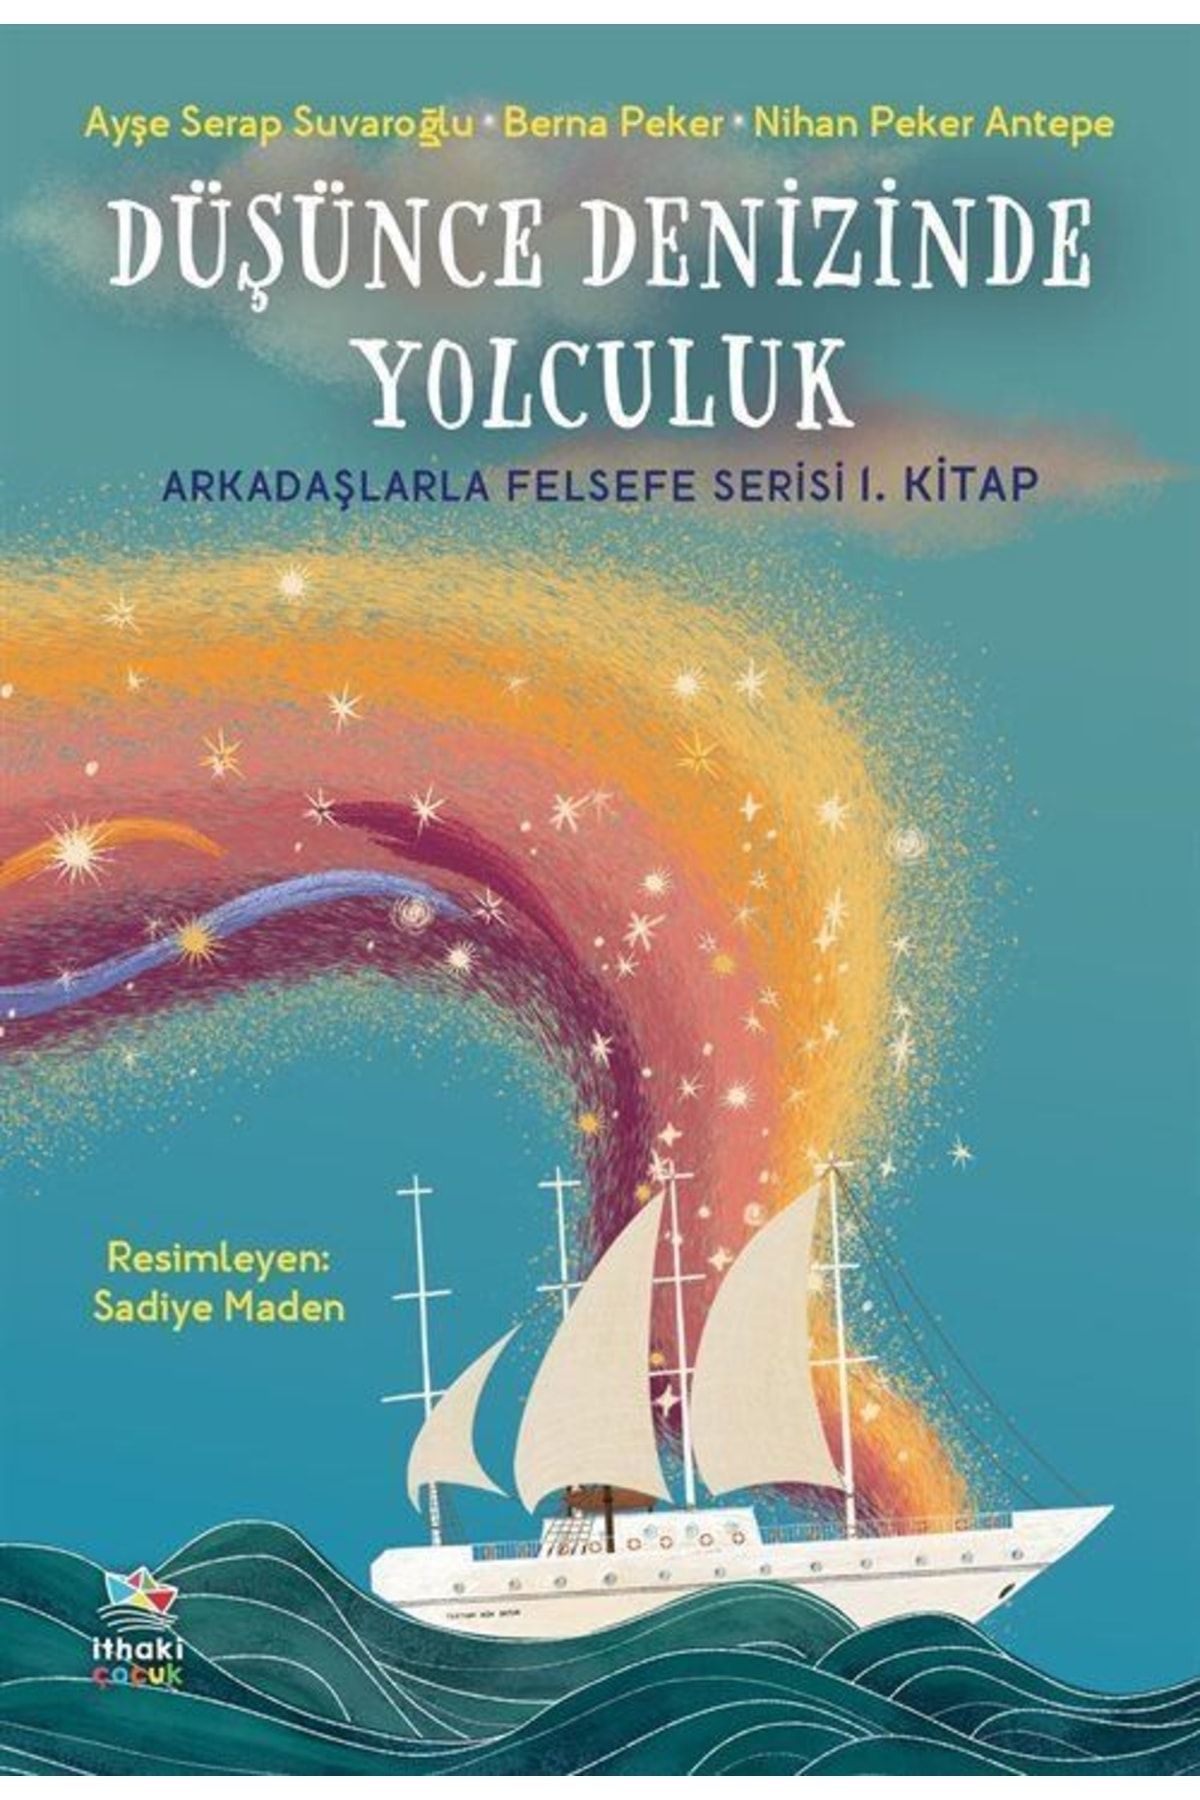 İthaki Yayınları Düşünce Denizinde Yolculuk / Arkadaşlarla Felsefe Serisi 1. Kitap